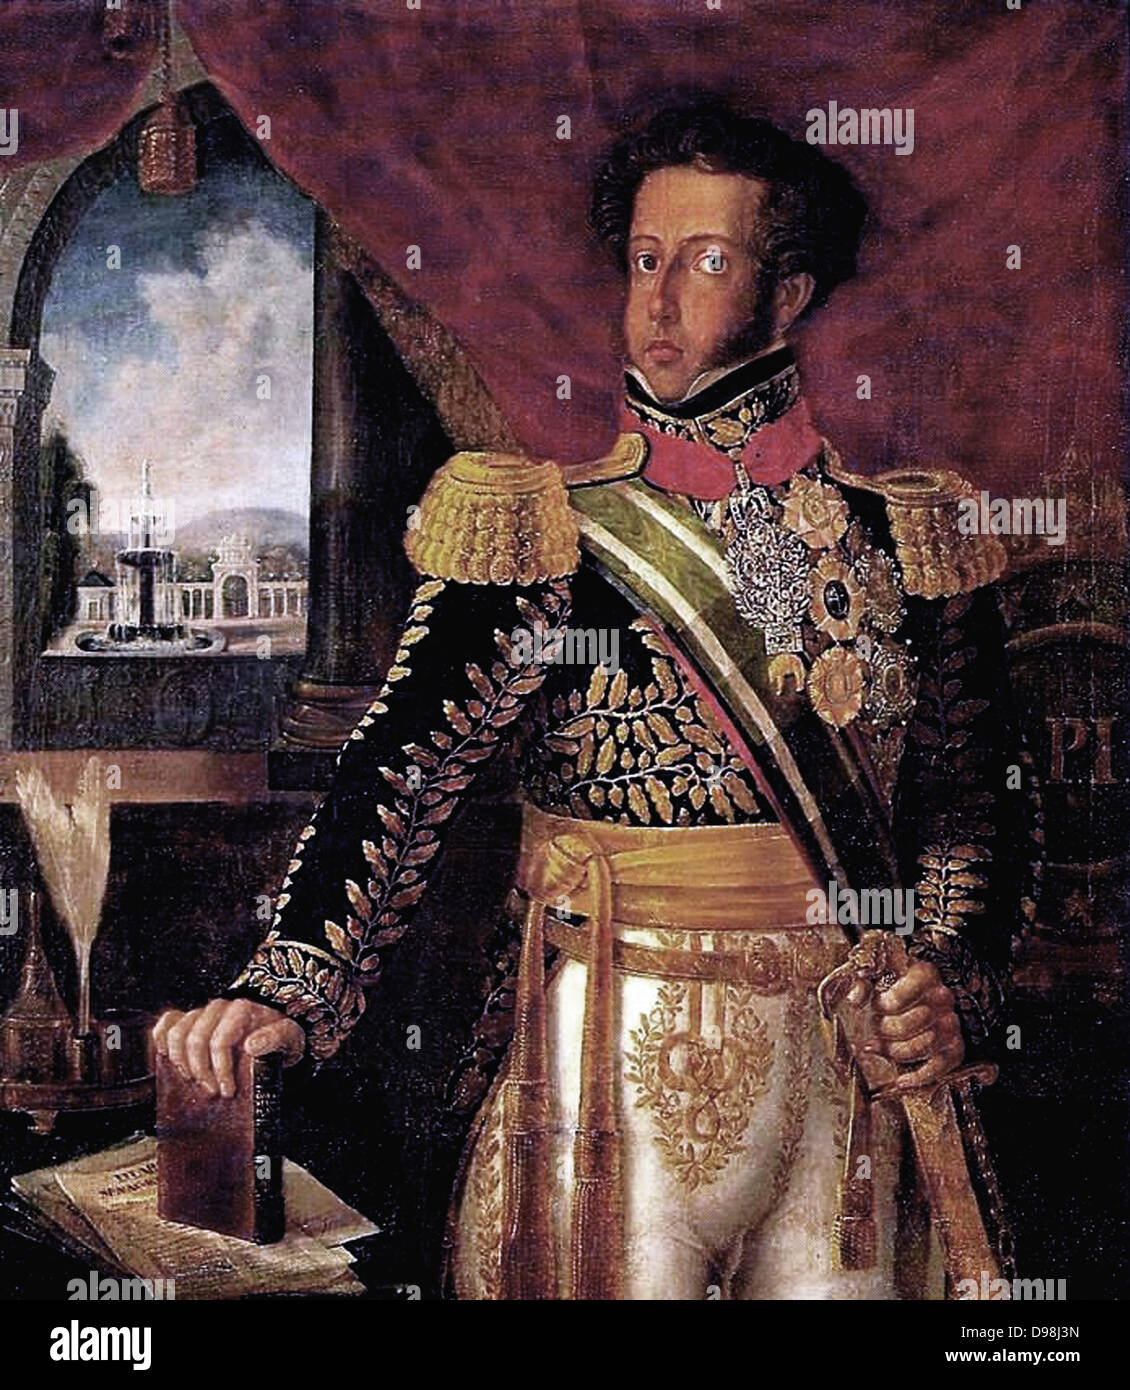 Pedro I du Brésil (1798 - 1834), fondateur et premier dirigeant de l'Empire du Brésil et également roi du Portugal comme Pedro IV, ayant régné pendant huit ans au Brésil et deux mois au Portugal, respectivement. de Manoel de Araújo Porto-Alegre (1806-1879) Banque D'Images